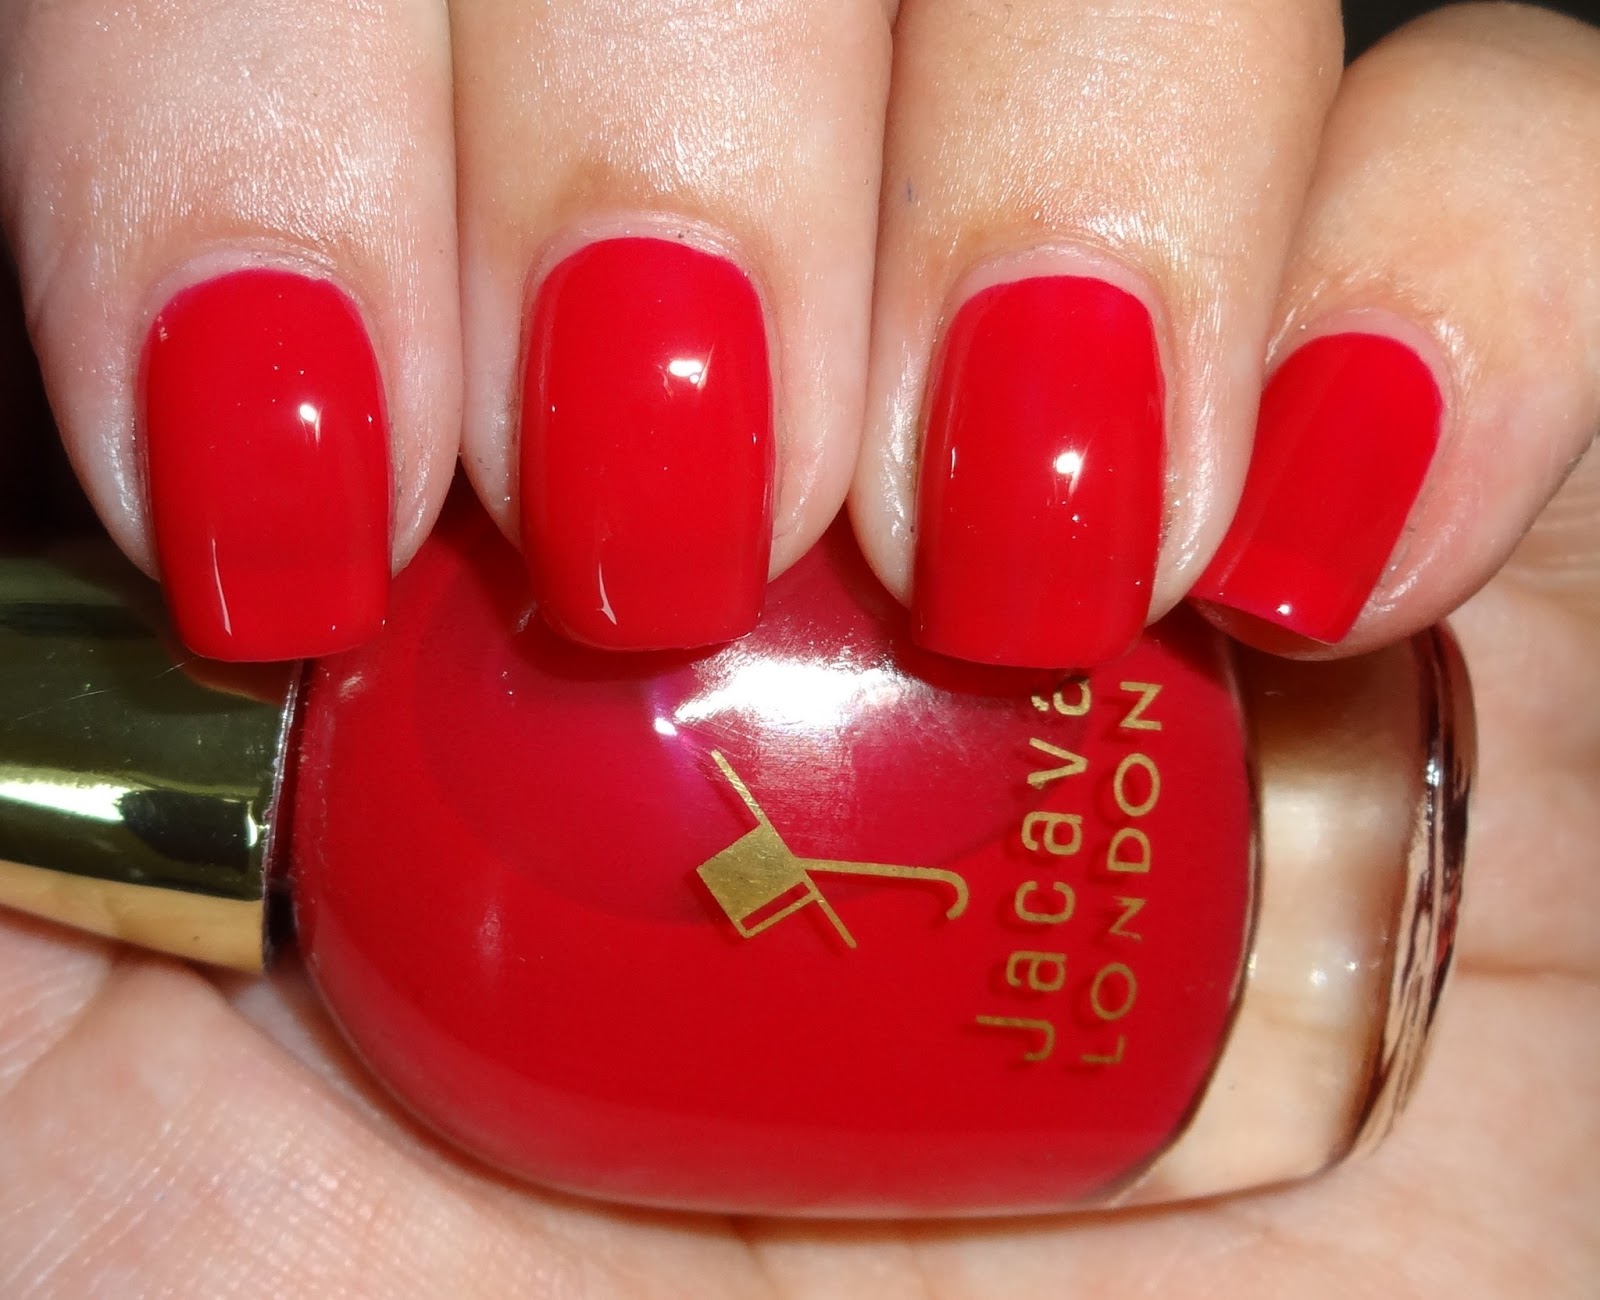 3. "Brilliant Crimson" Nail Polish Idea - wide 7